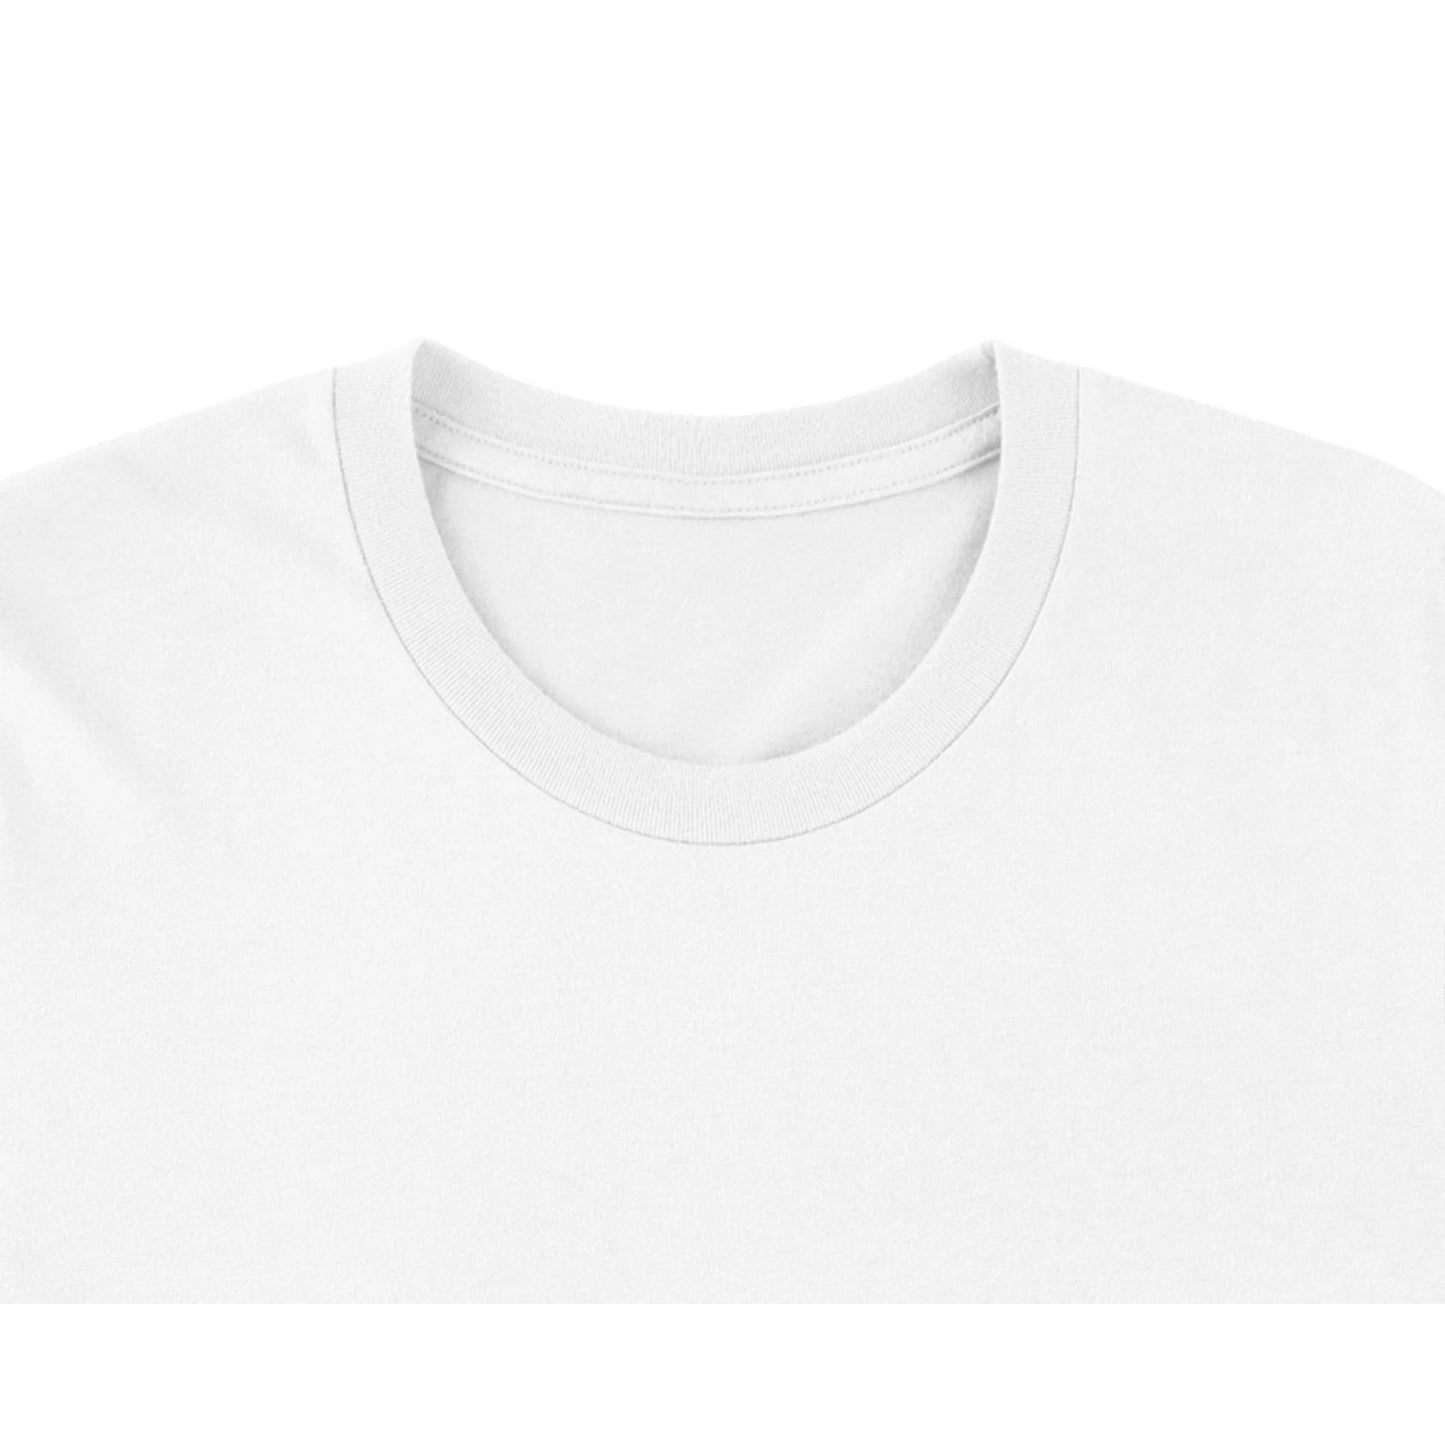 Budget Unisex Crewneck T-shirt/Astronaut-Relaxing